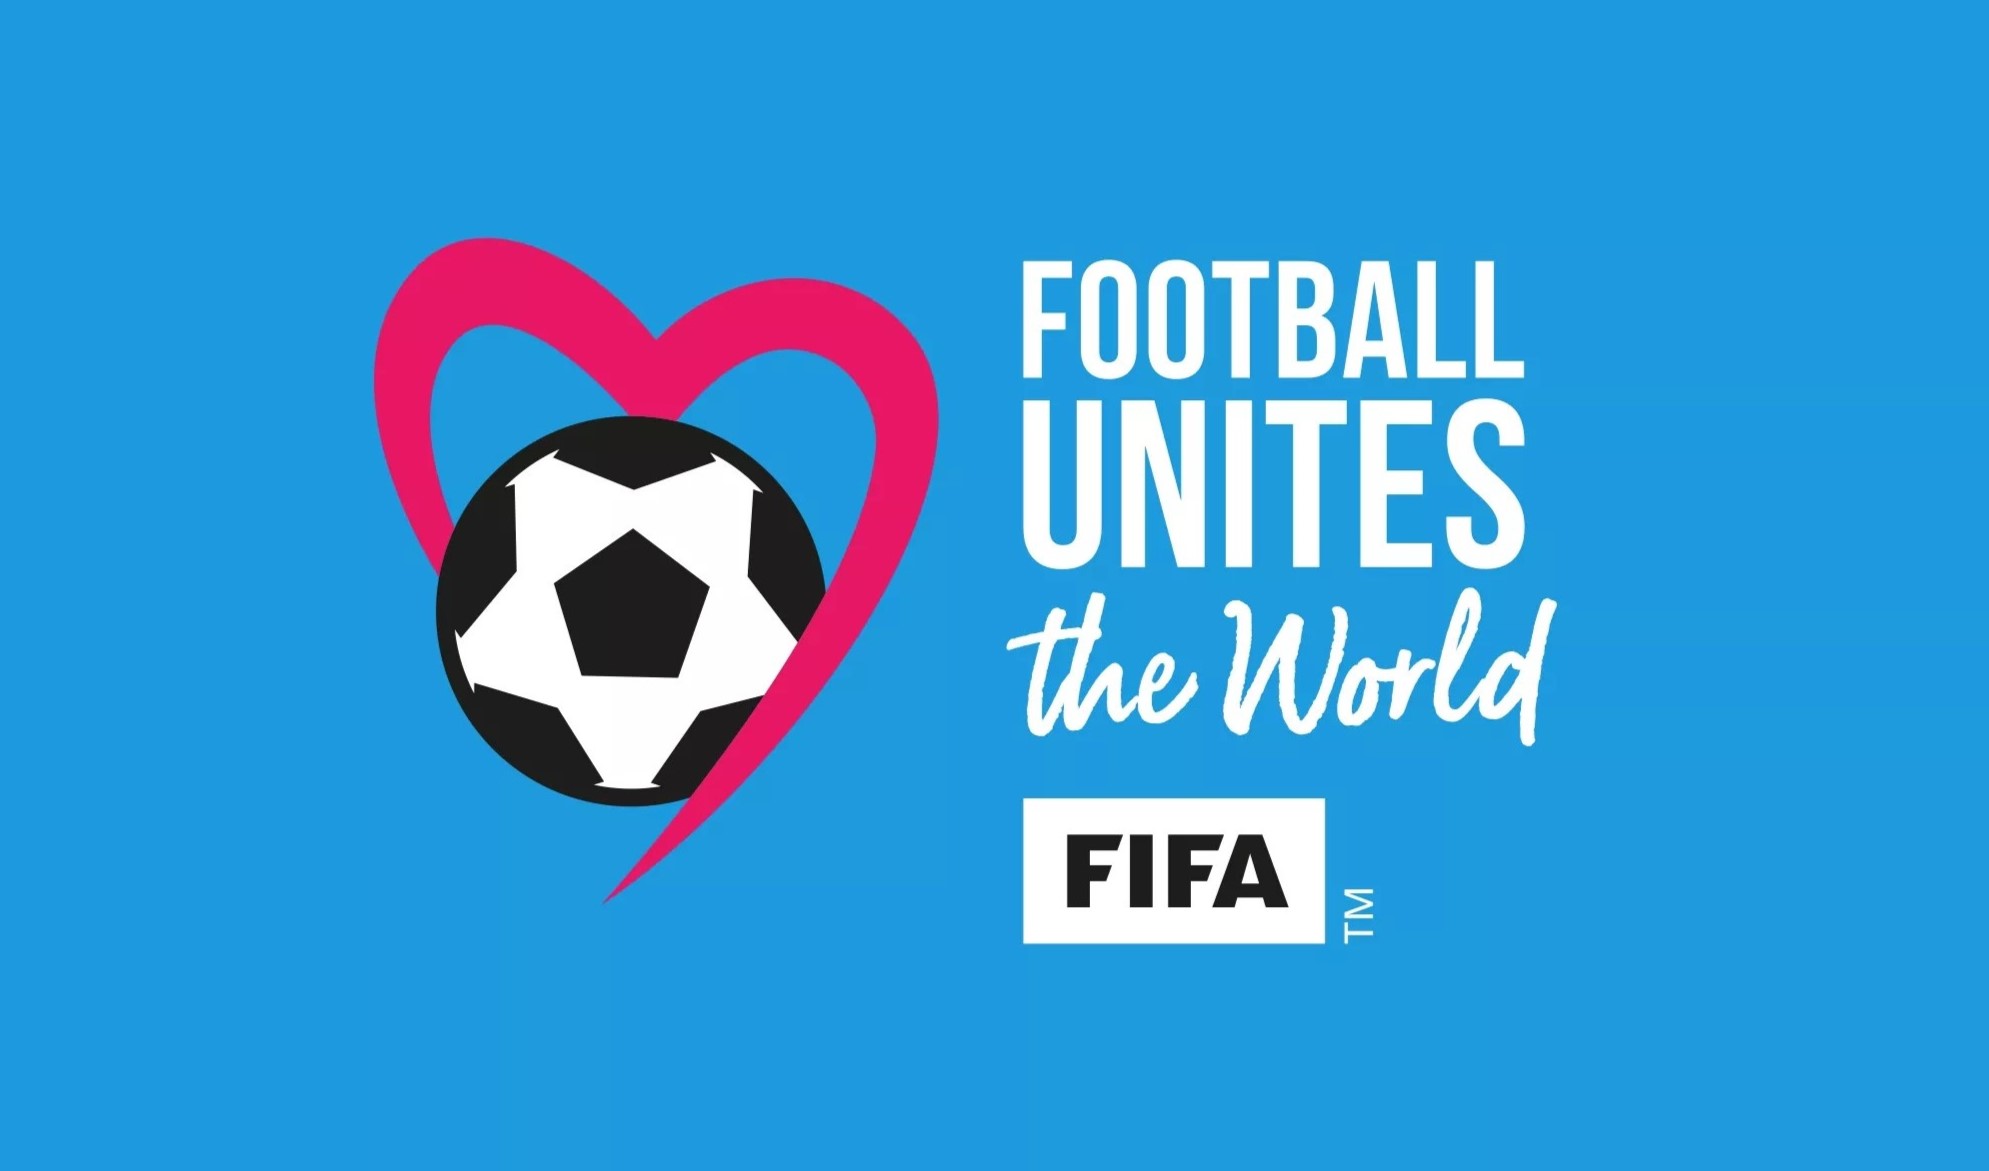 Home - FIFA World Cup 26 Dallas™